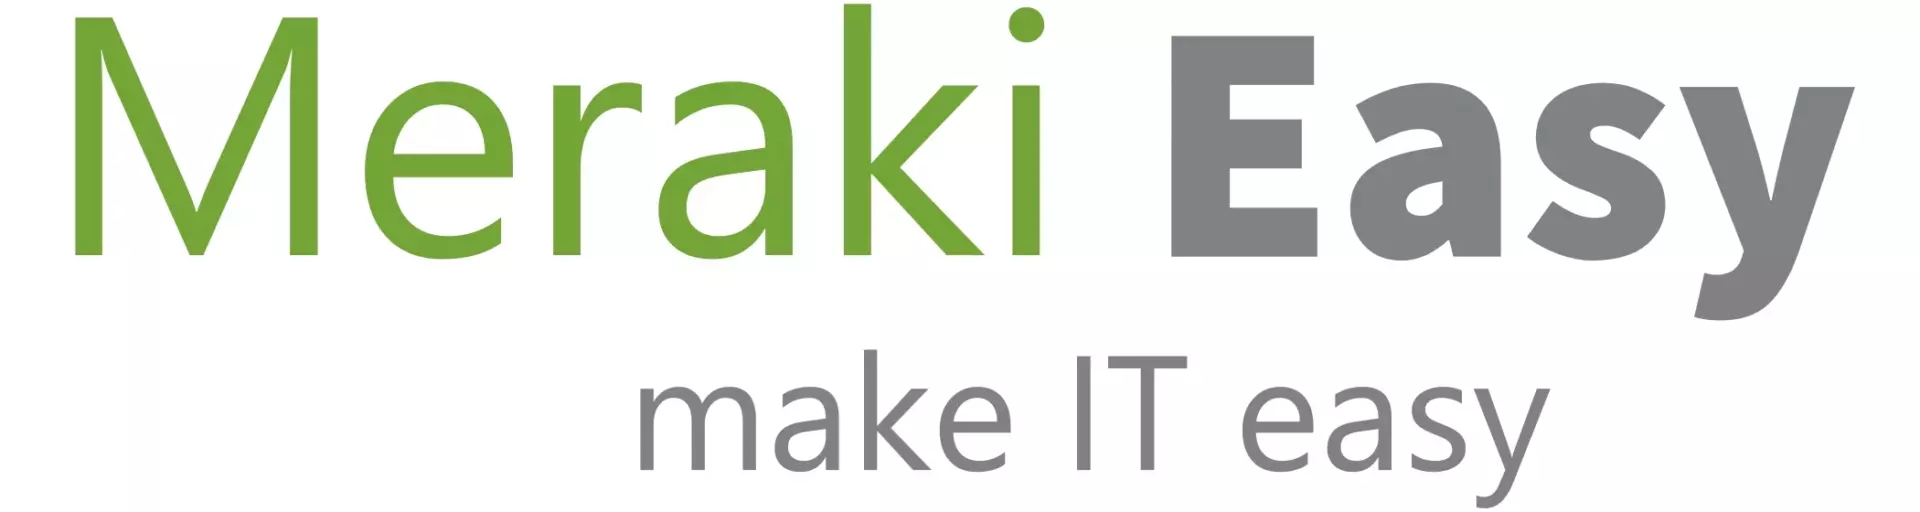 Logo de Meraki Easy